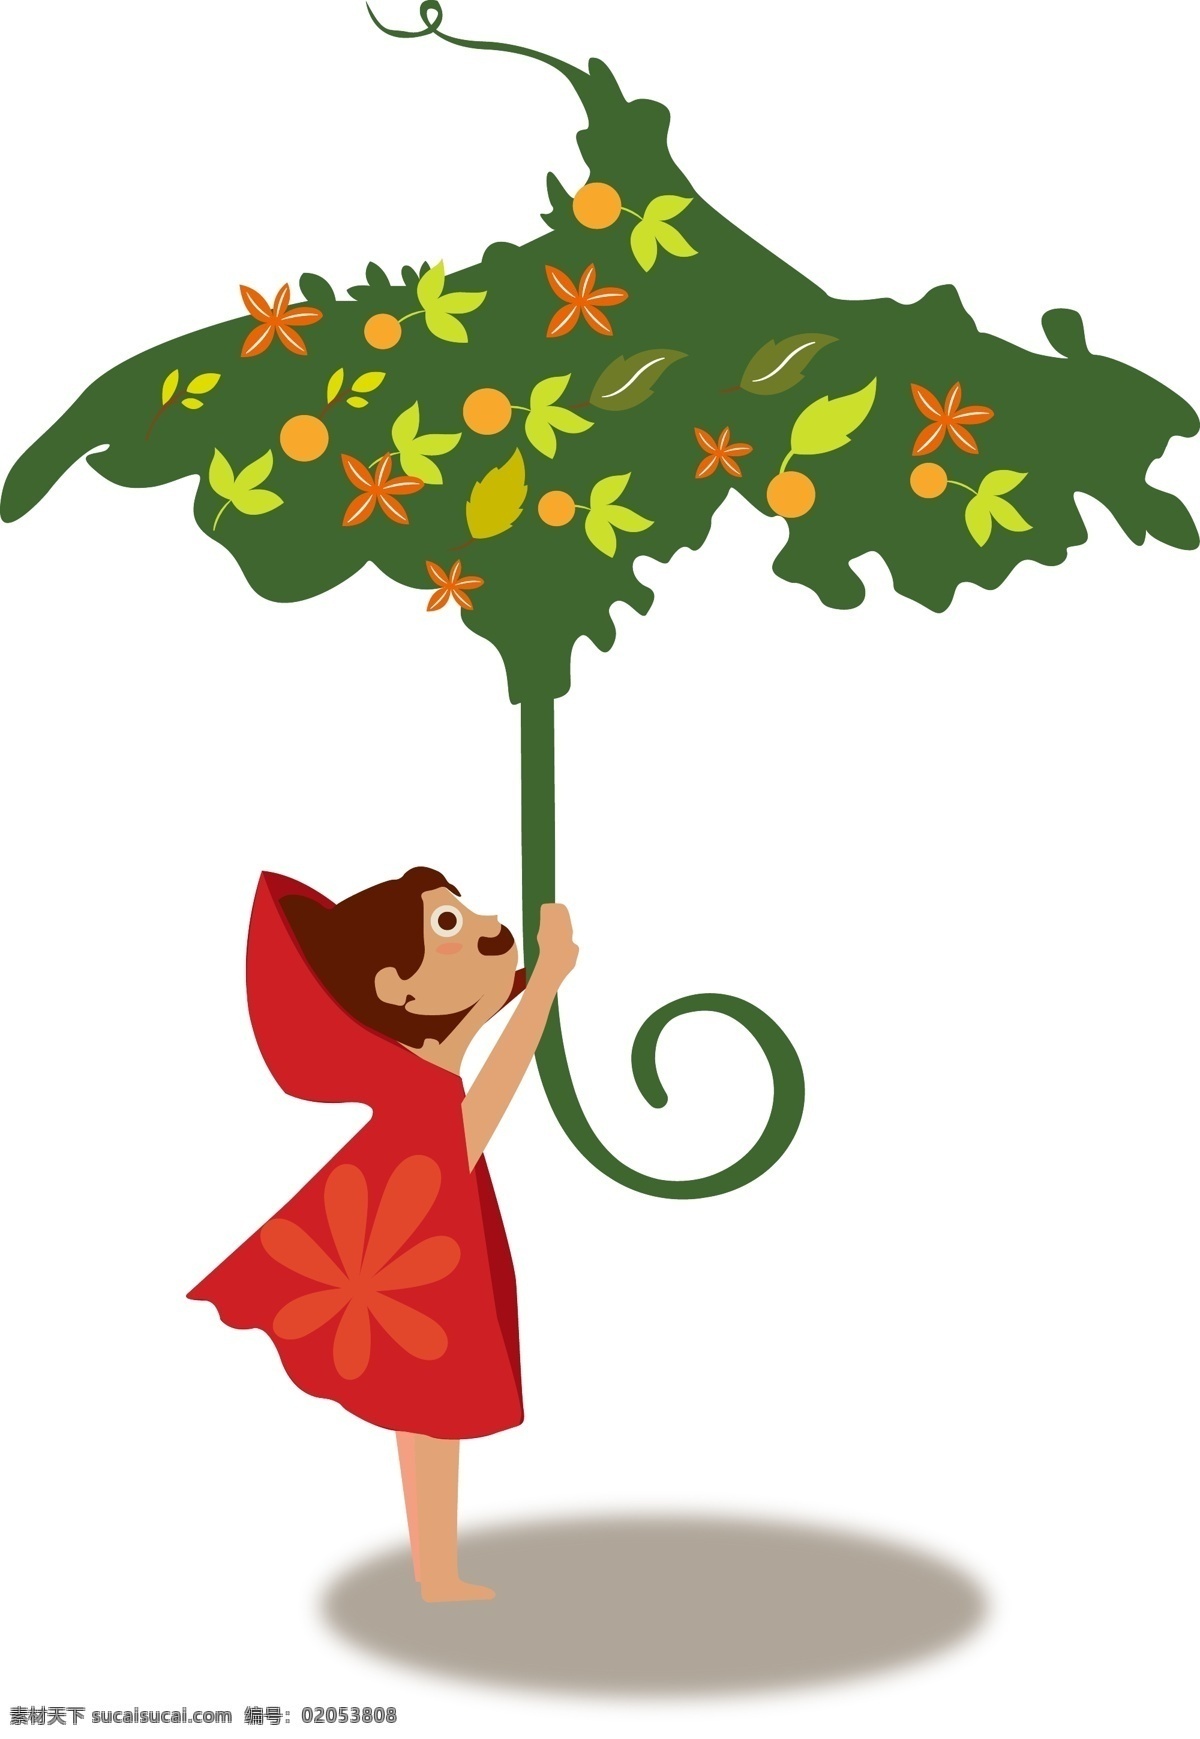 矢量 手绘 卡通 女孩 可以 雨伞 绿树 红色 斗篷 树叶 形状 花朵 可爱 笑脸 短发